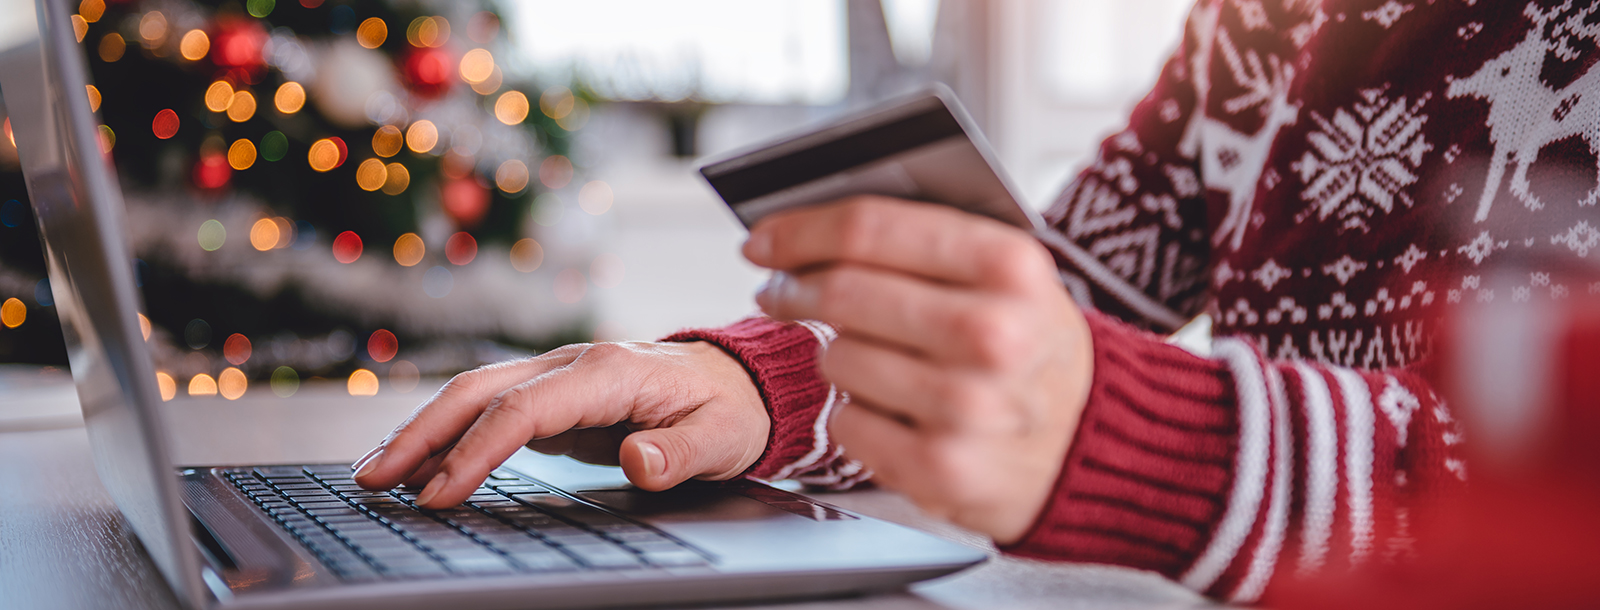 5 zasad bezpiecznych zakupów świątecznych w sieci. Jak nie dać się złapać cyberoszustom?